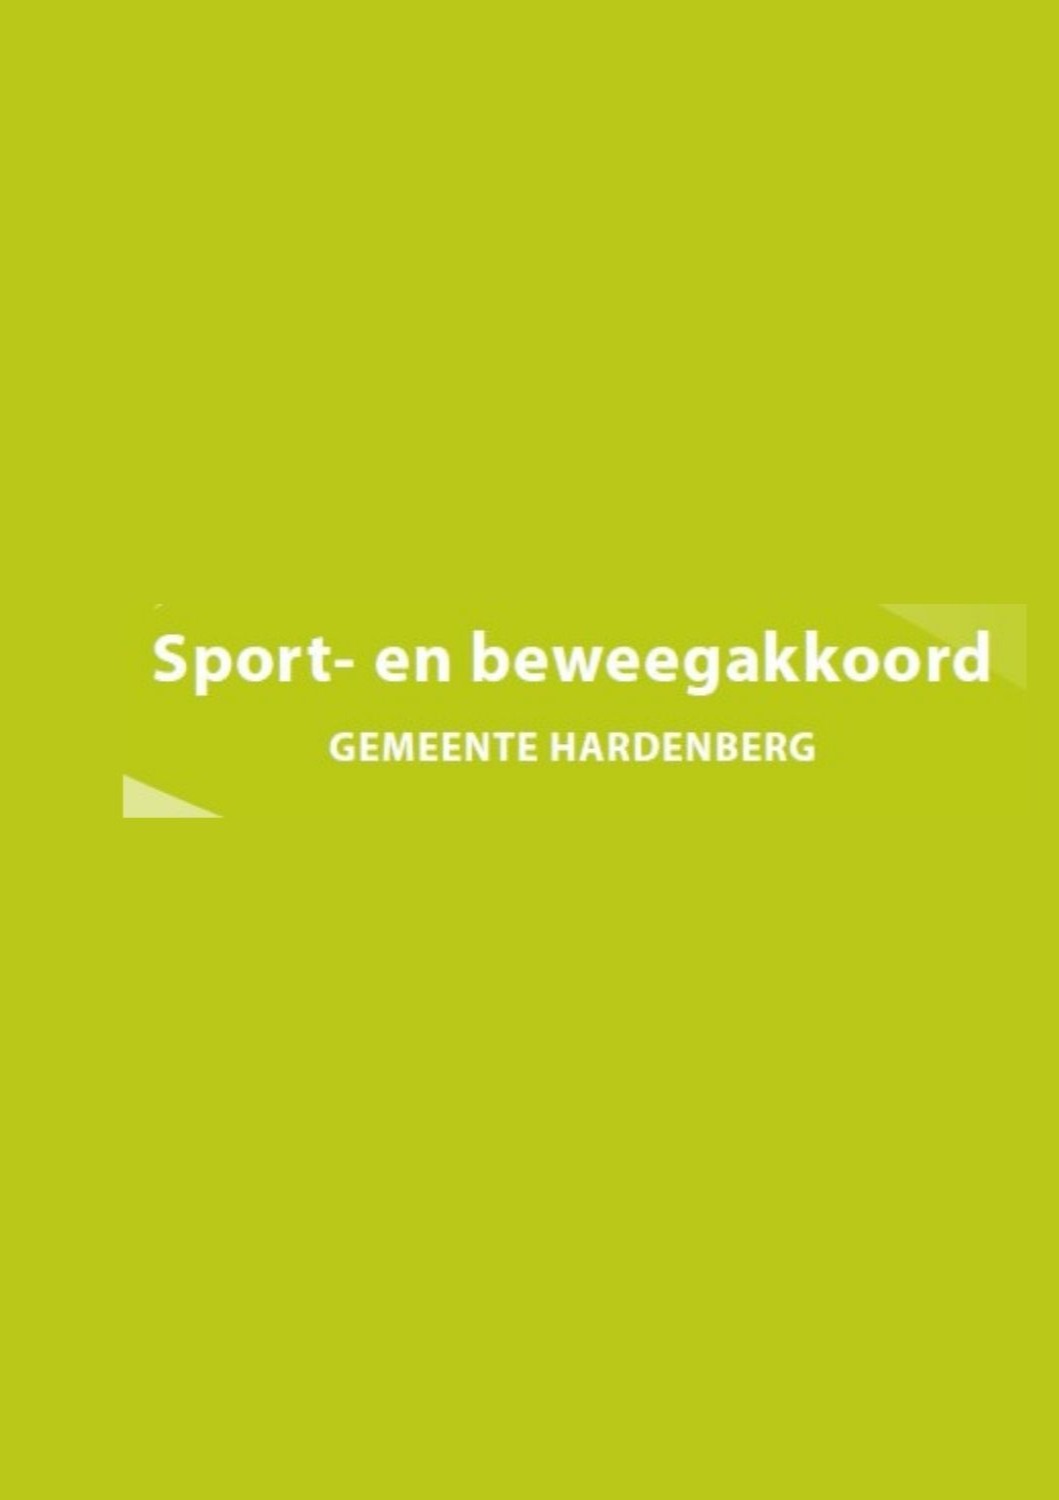 sport en beweegakkoord Hardenberg